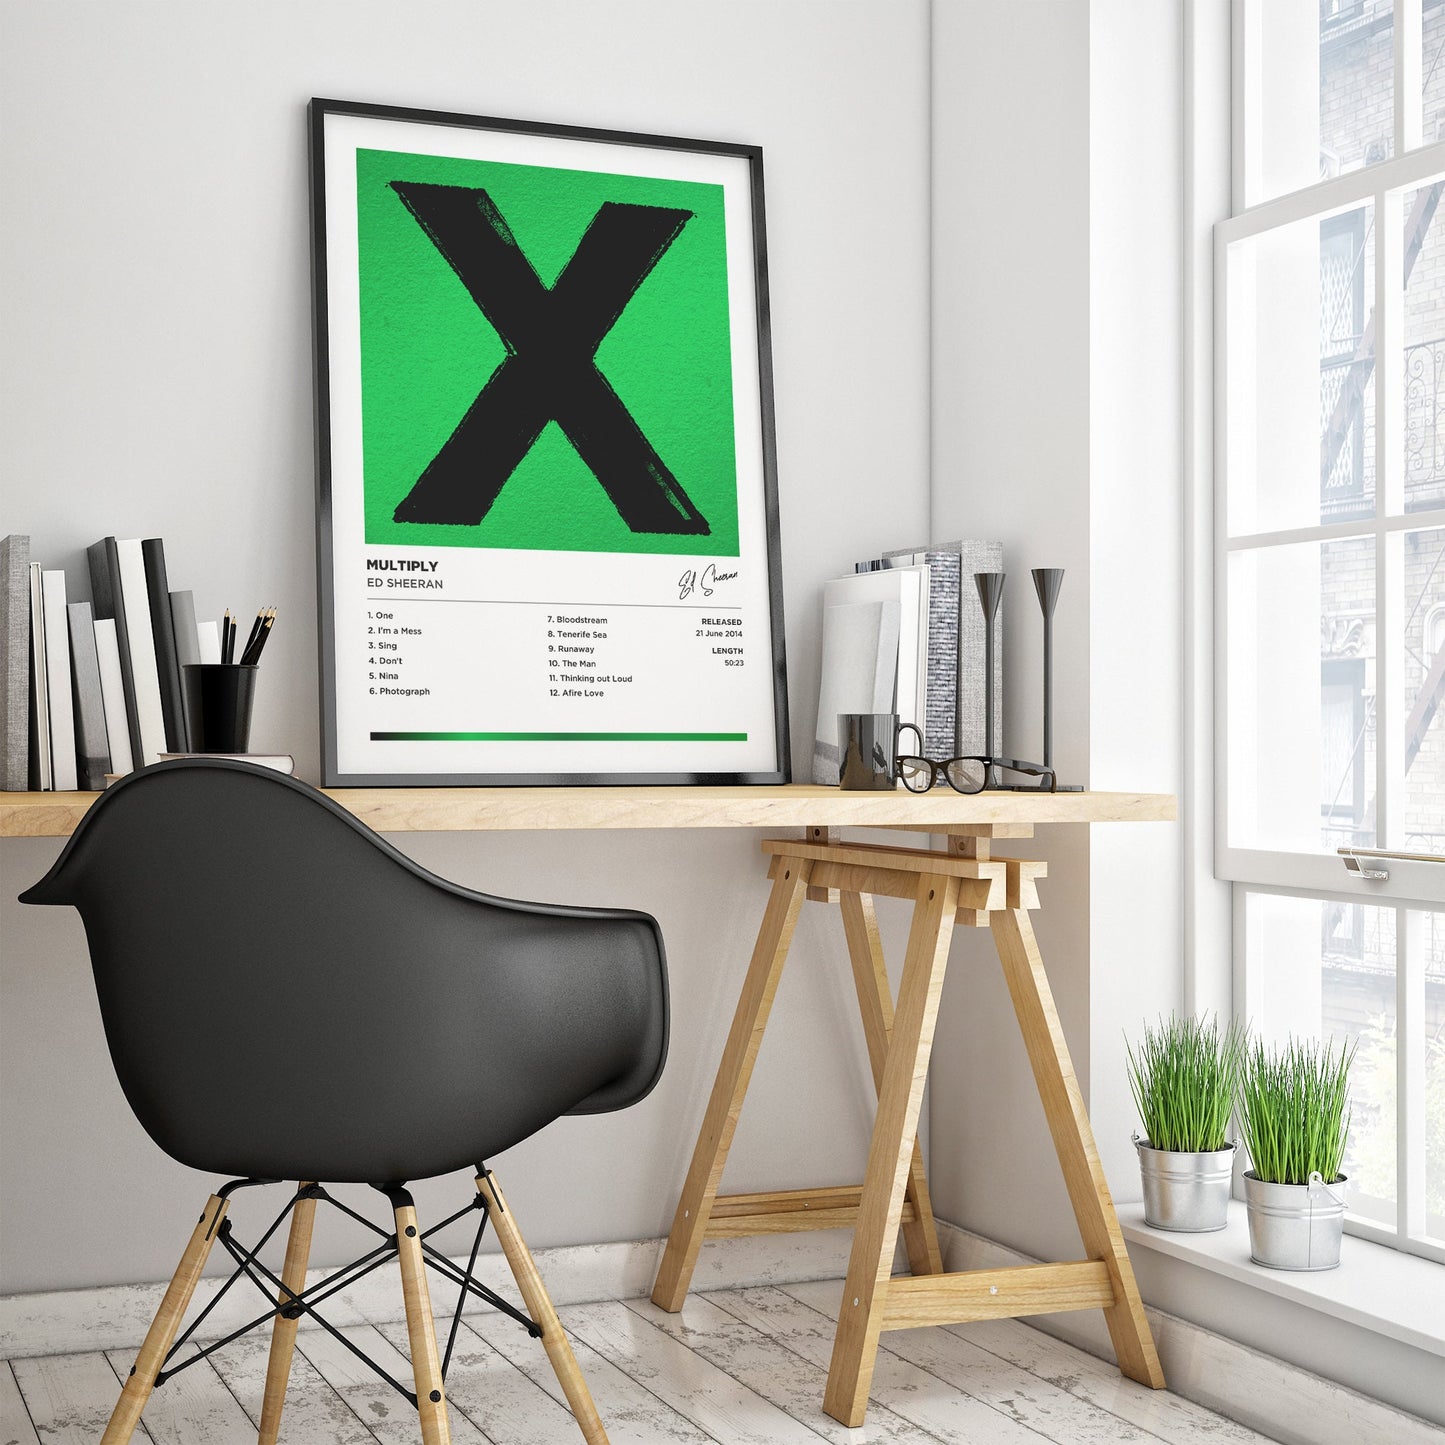 Ed Sheeran - Multiply Framed Poster Print | Polaroid Style | Album Cover Artwork